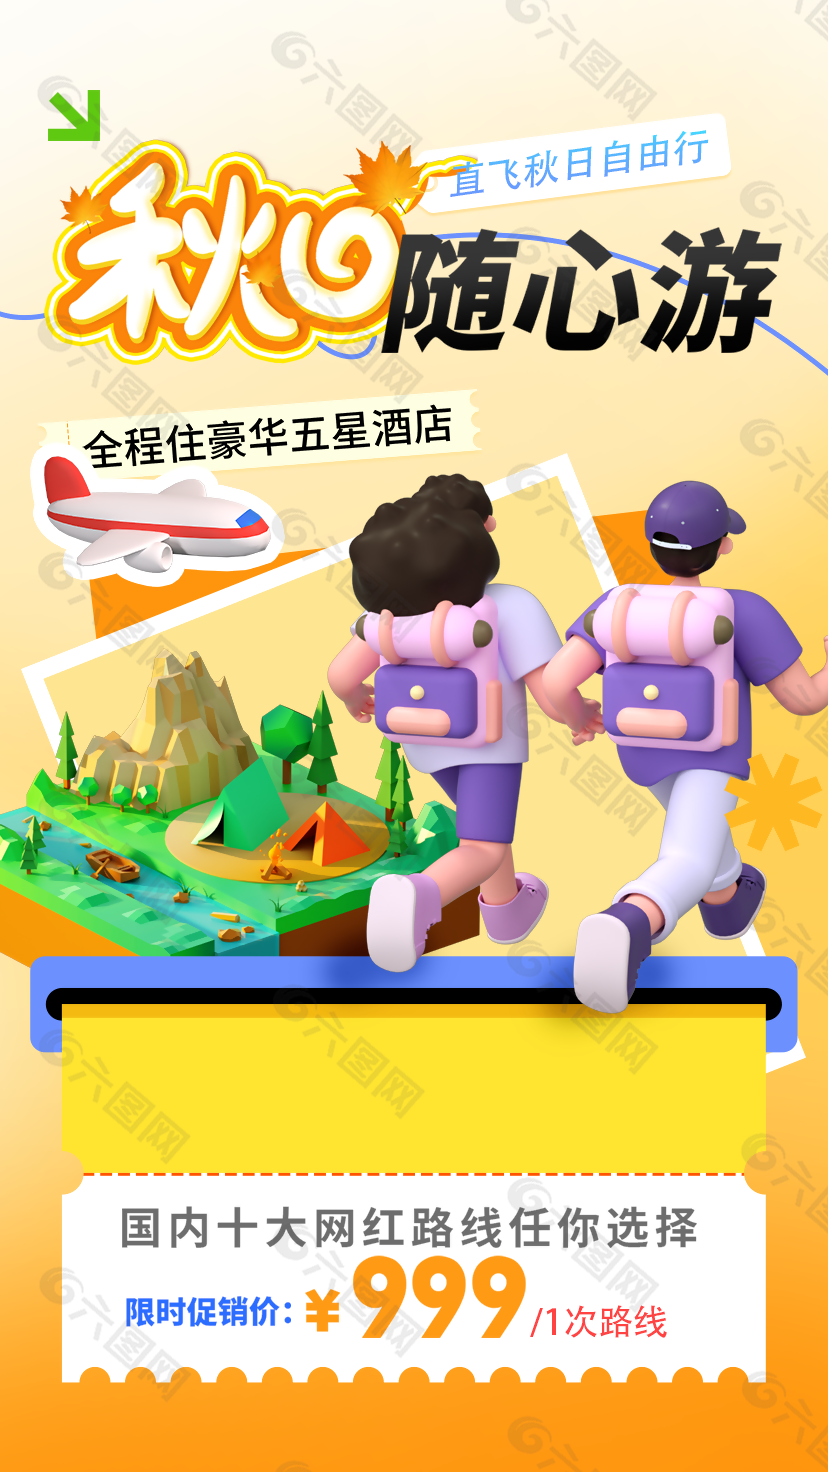 精美3D插画风秋日随心游旅行海报设计